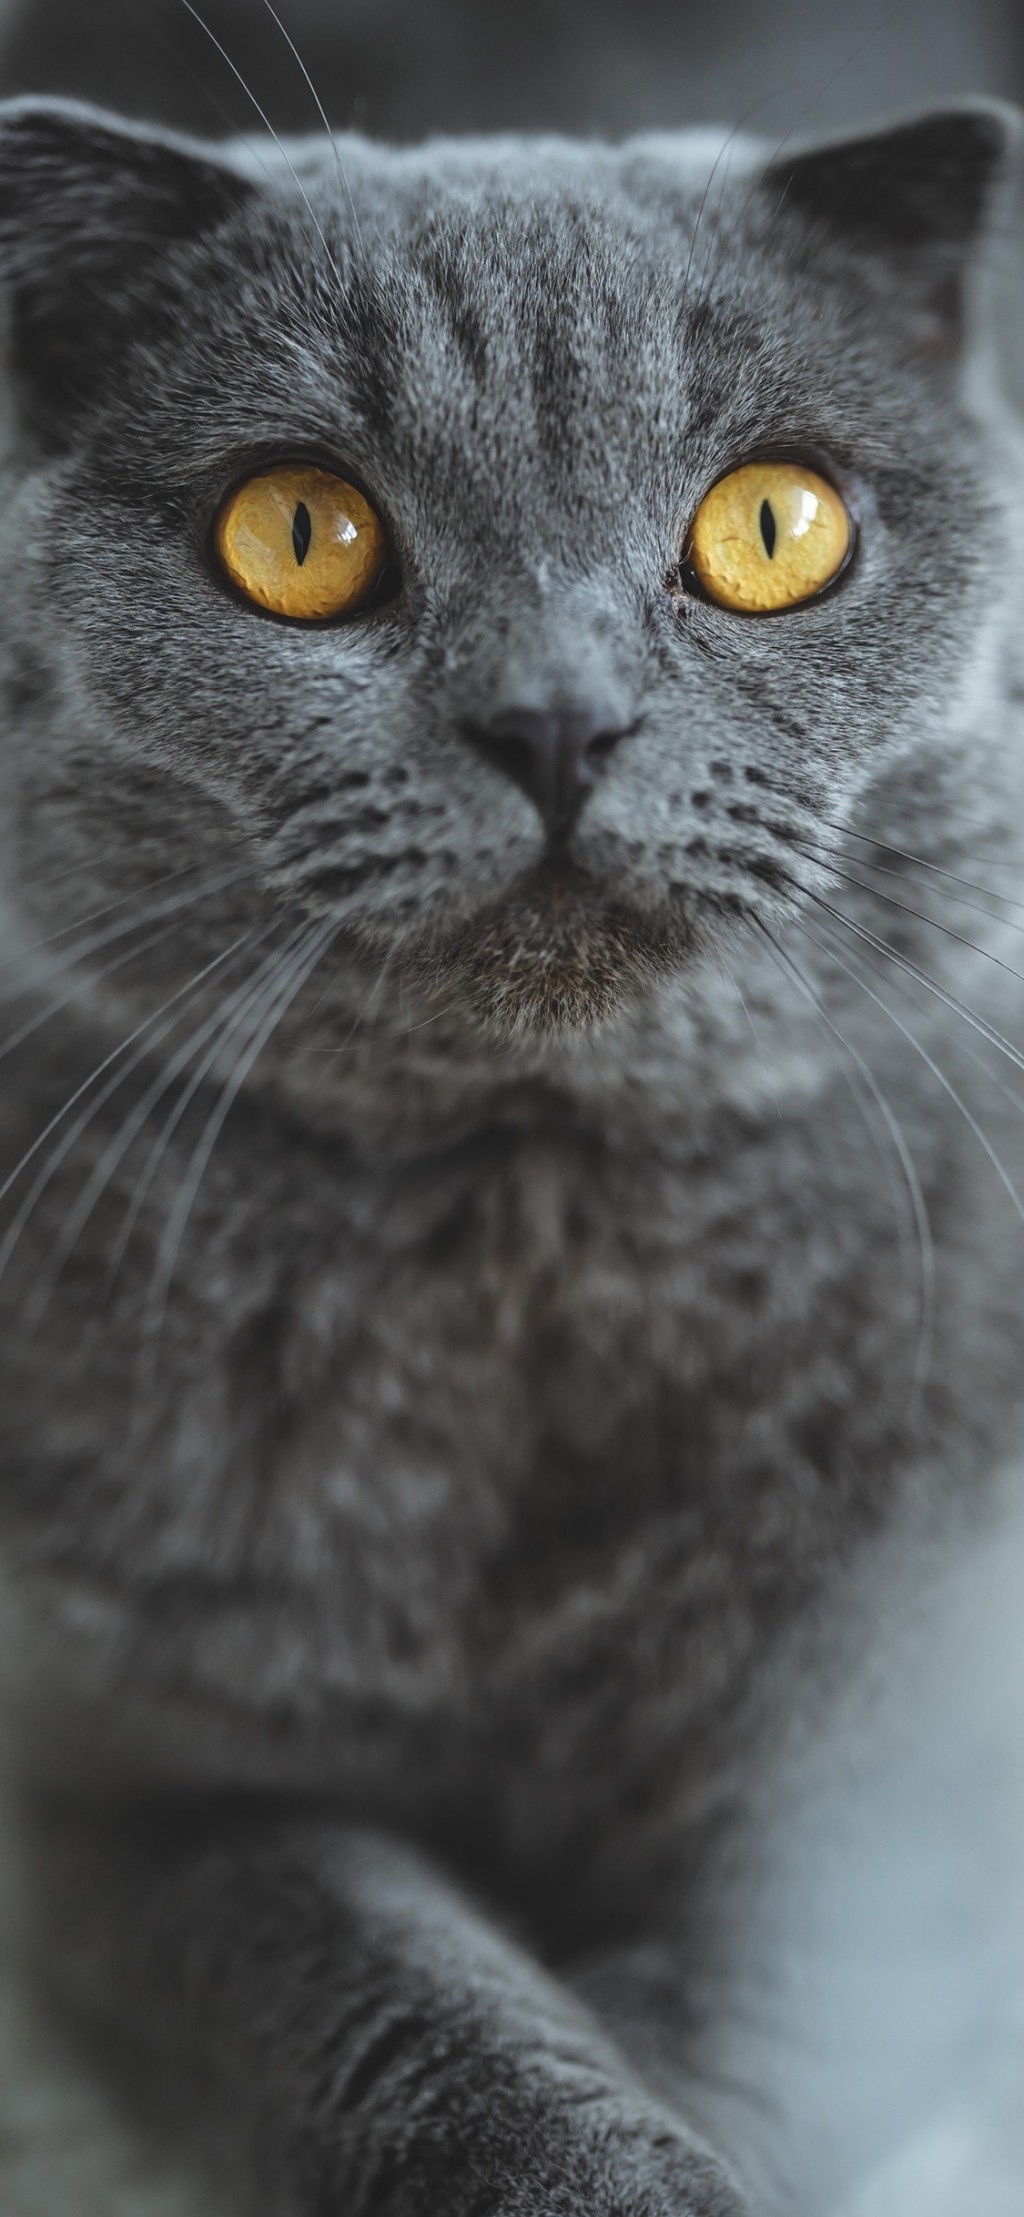 俄罗斯蓝猫呆萌可爱手机壁纸,动物-靓丽图库